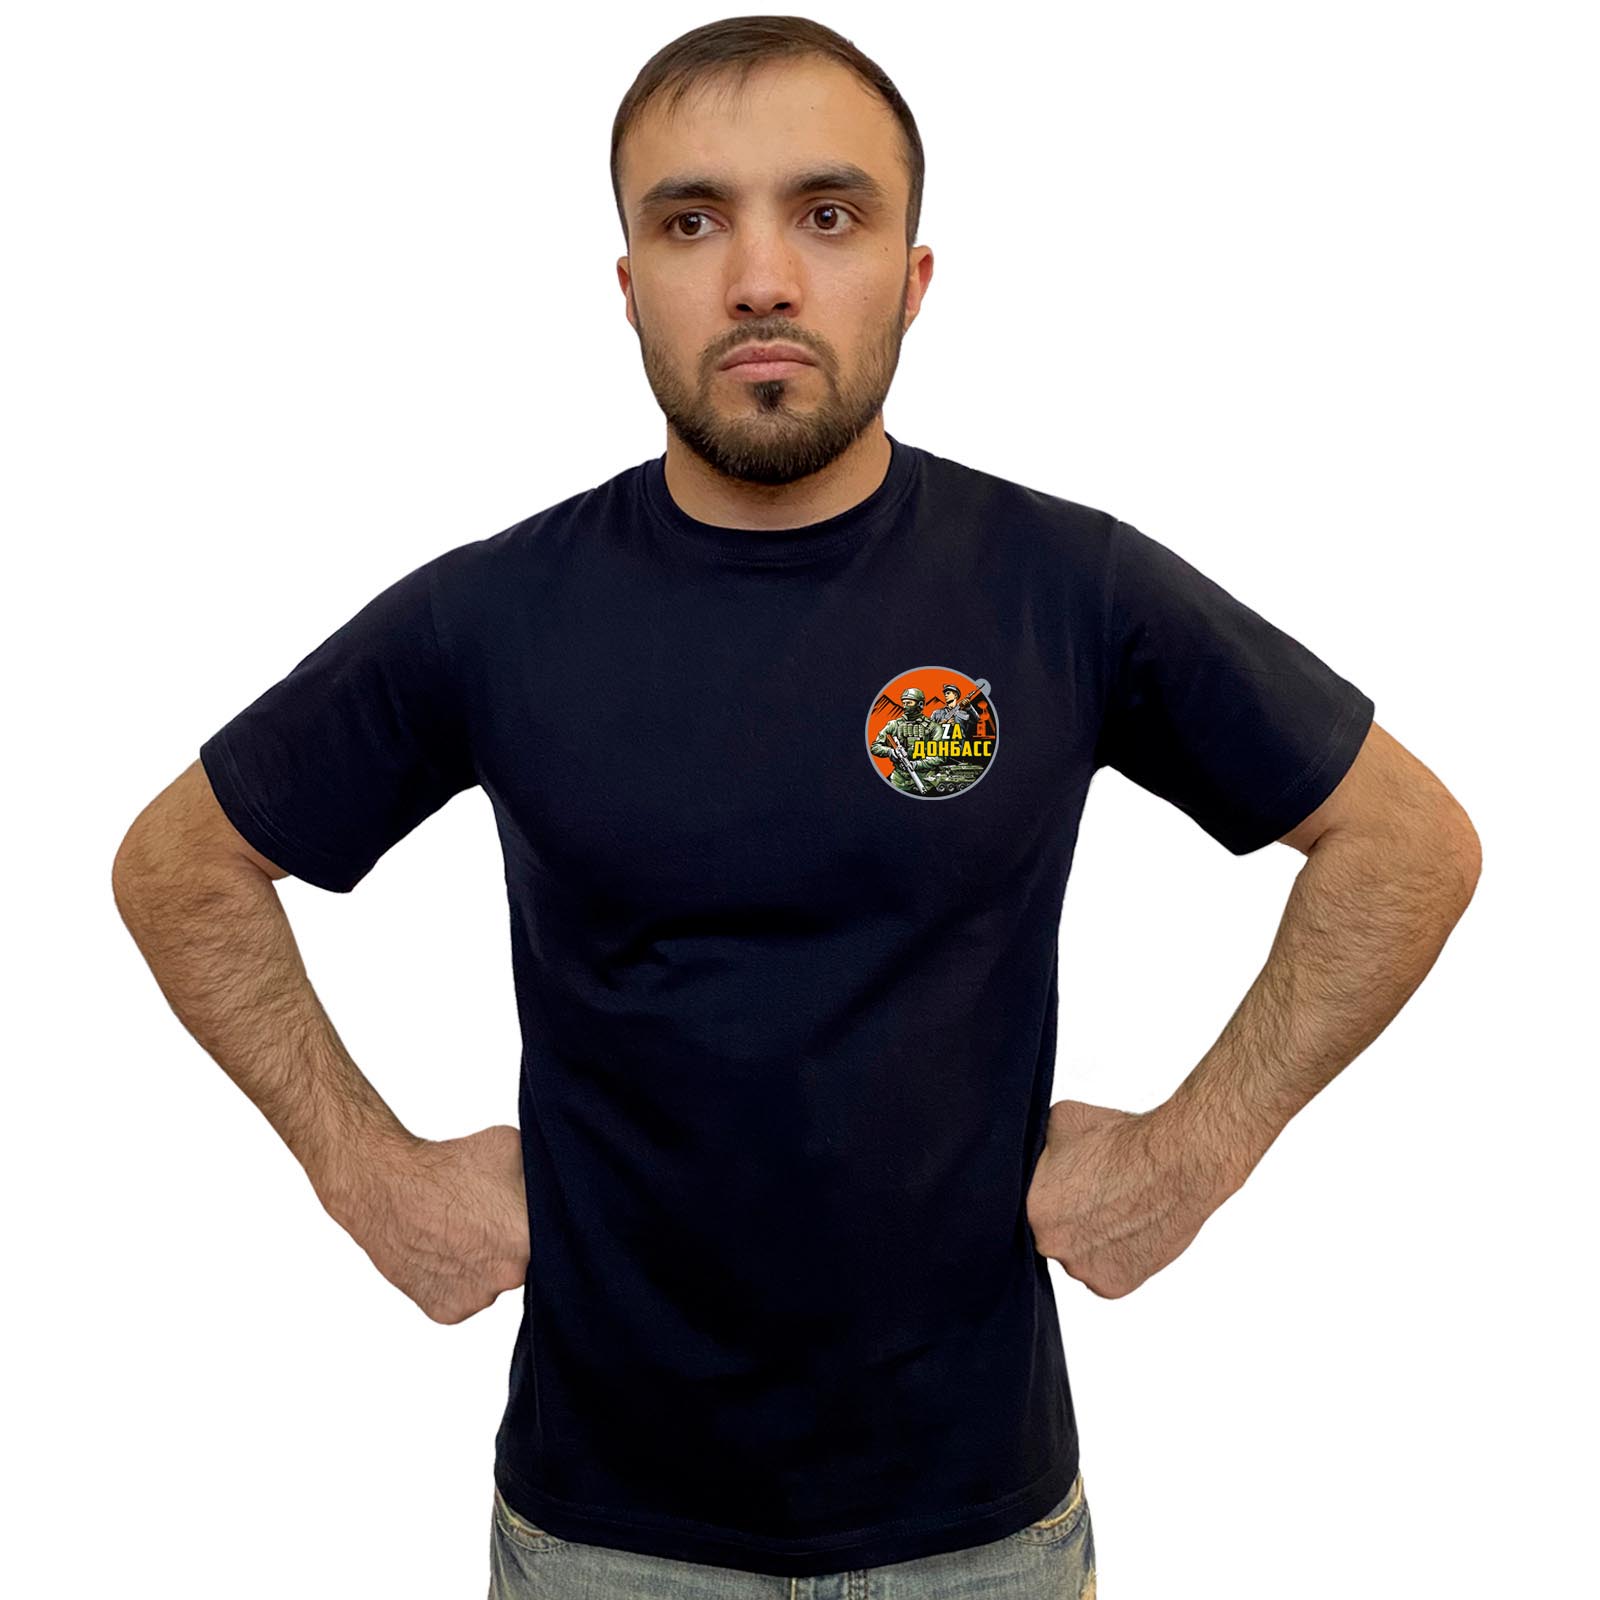 Тёмно-синяя футболка с термопринтом "Zа Донбасс"